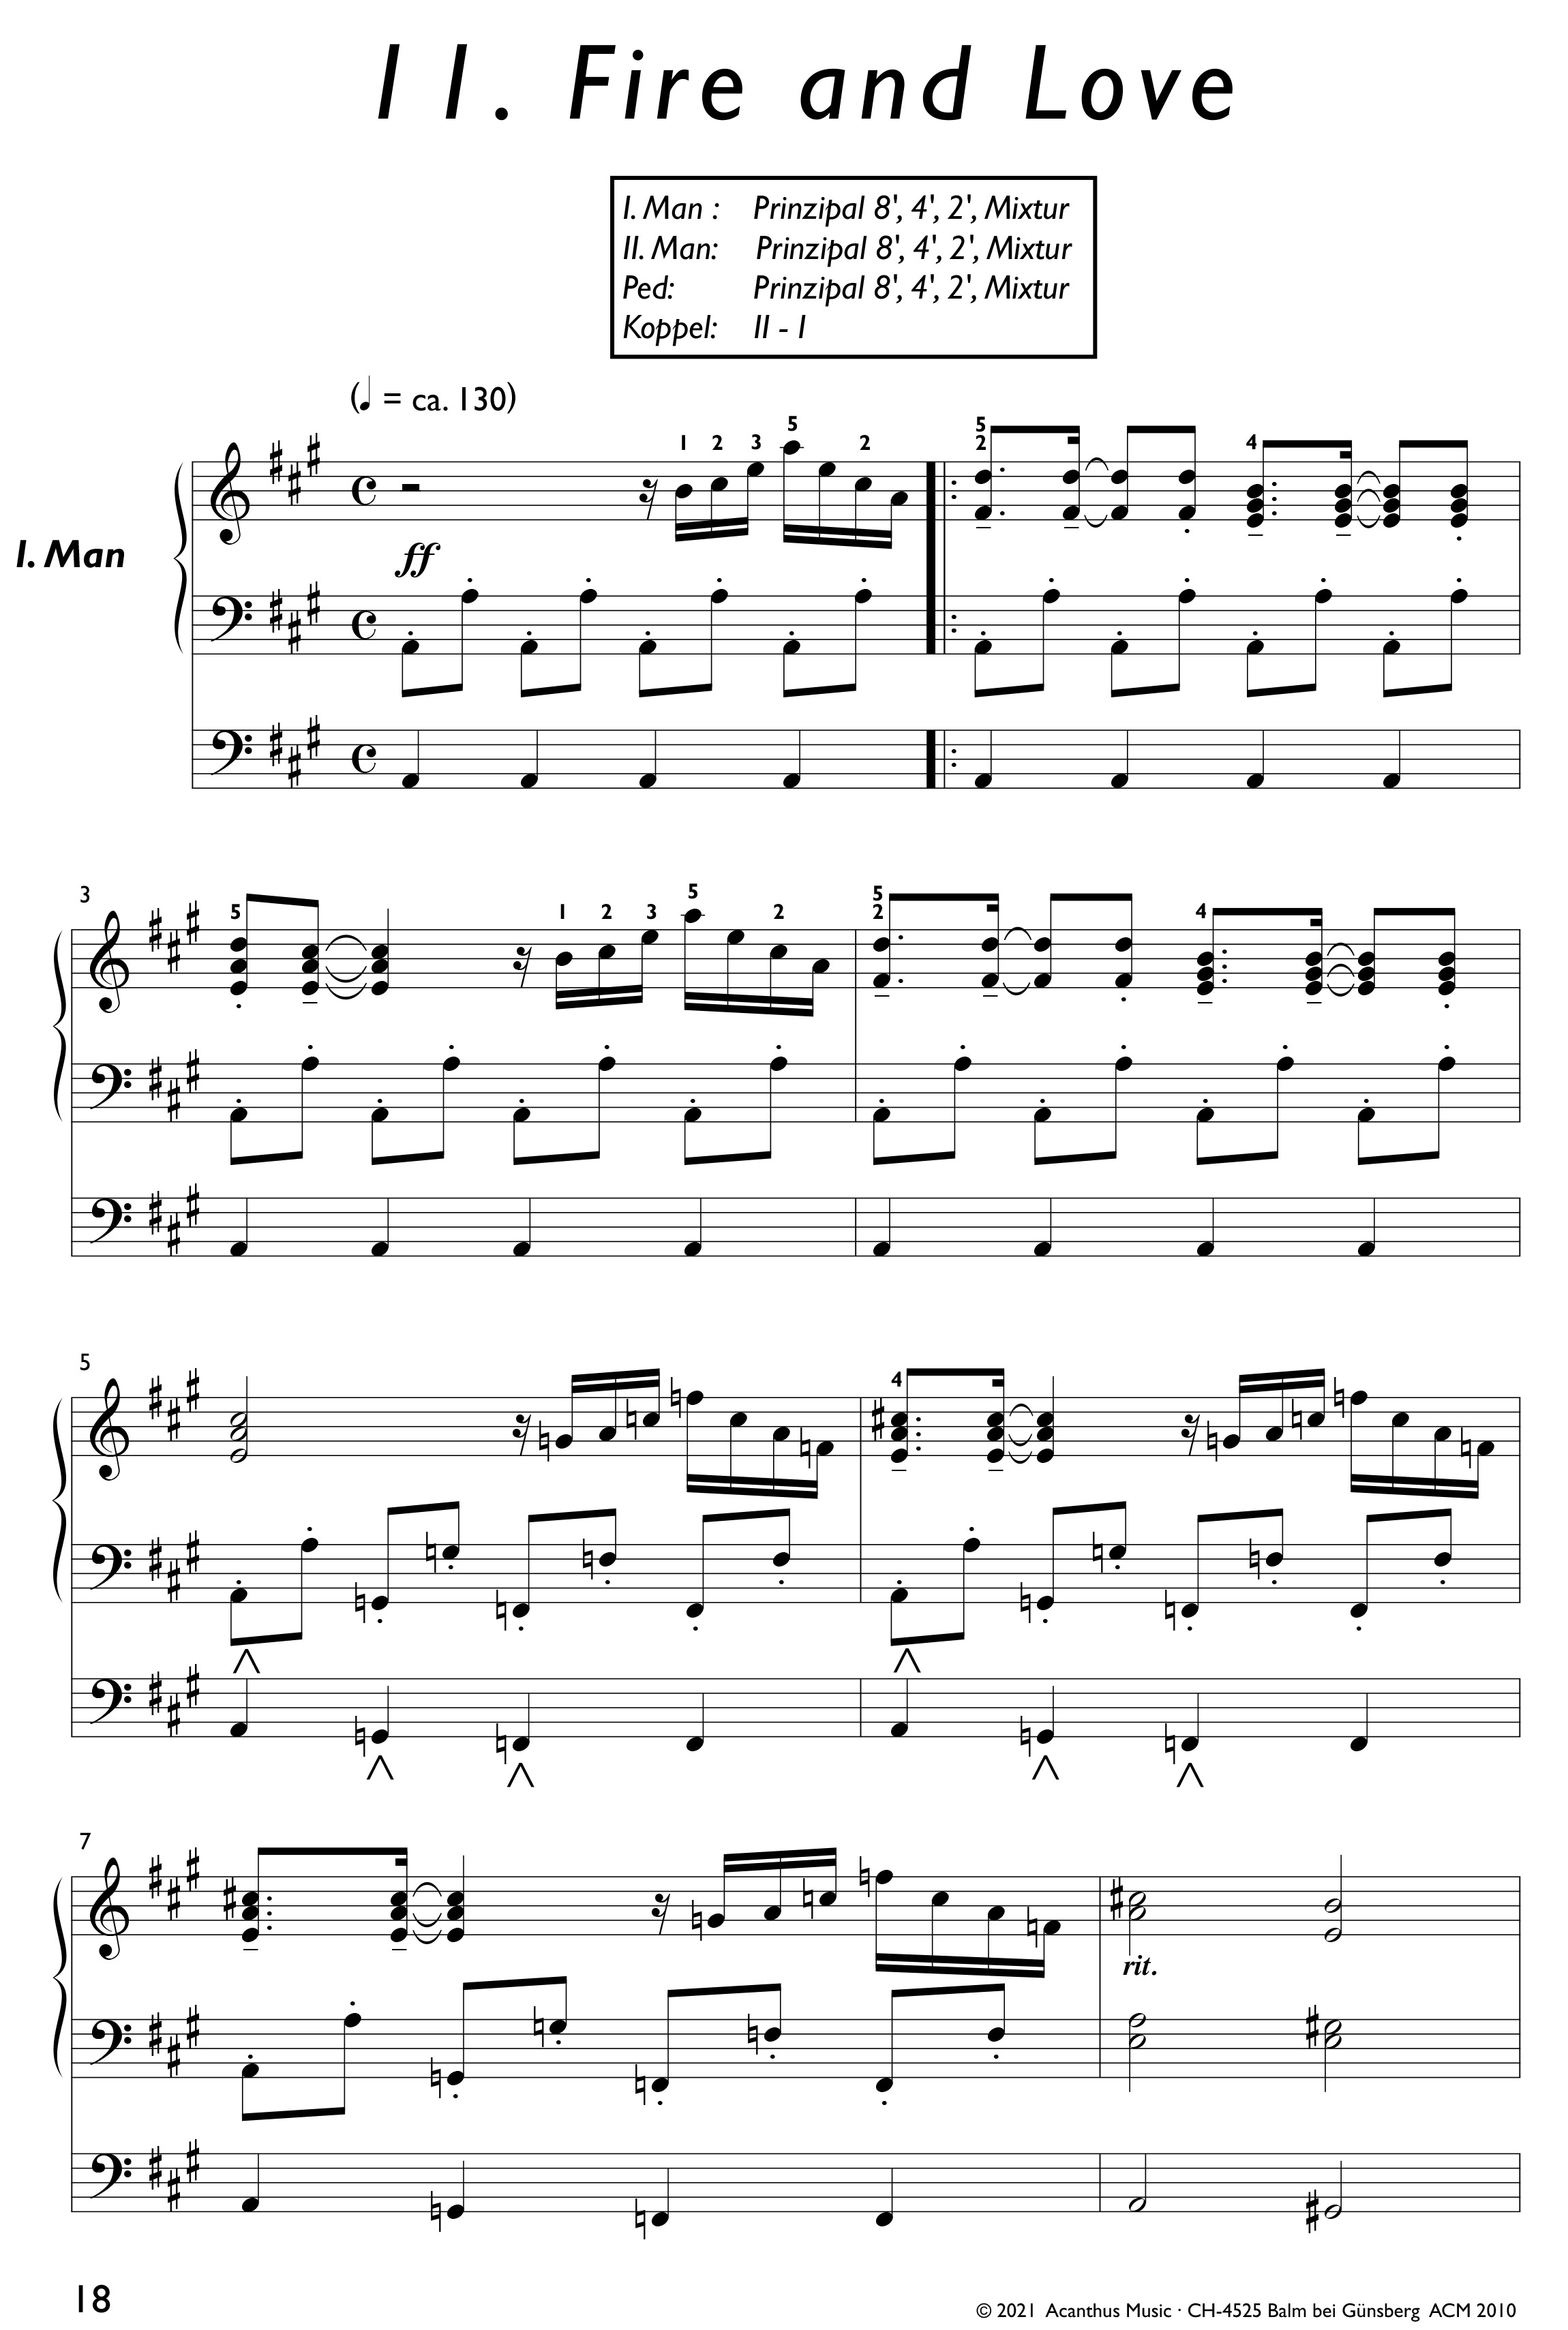 Pop Organ Vol. 1 - 11 skladeb pro varhany